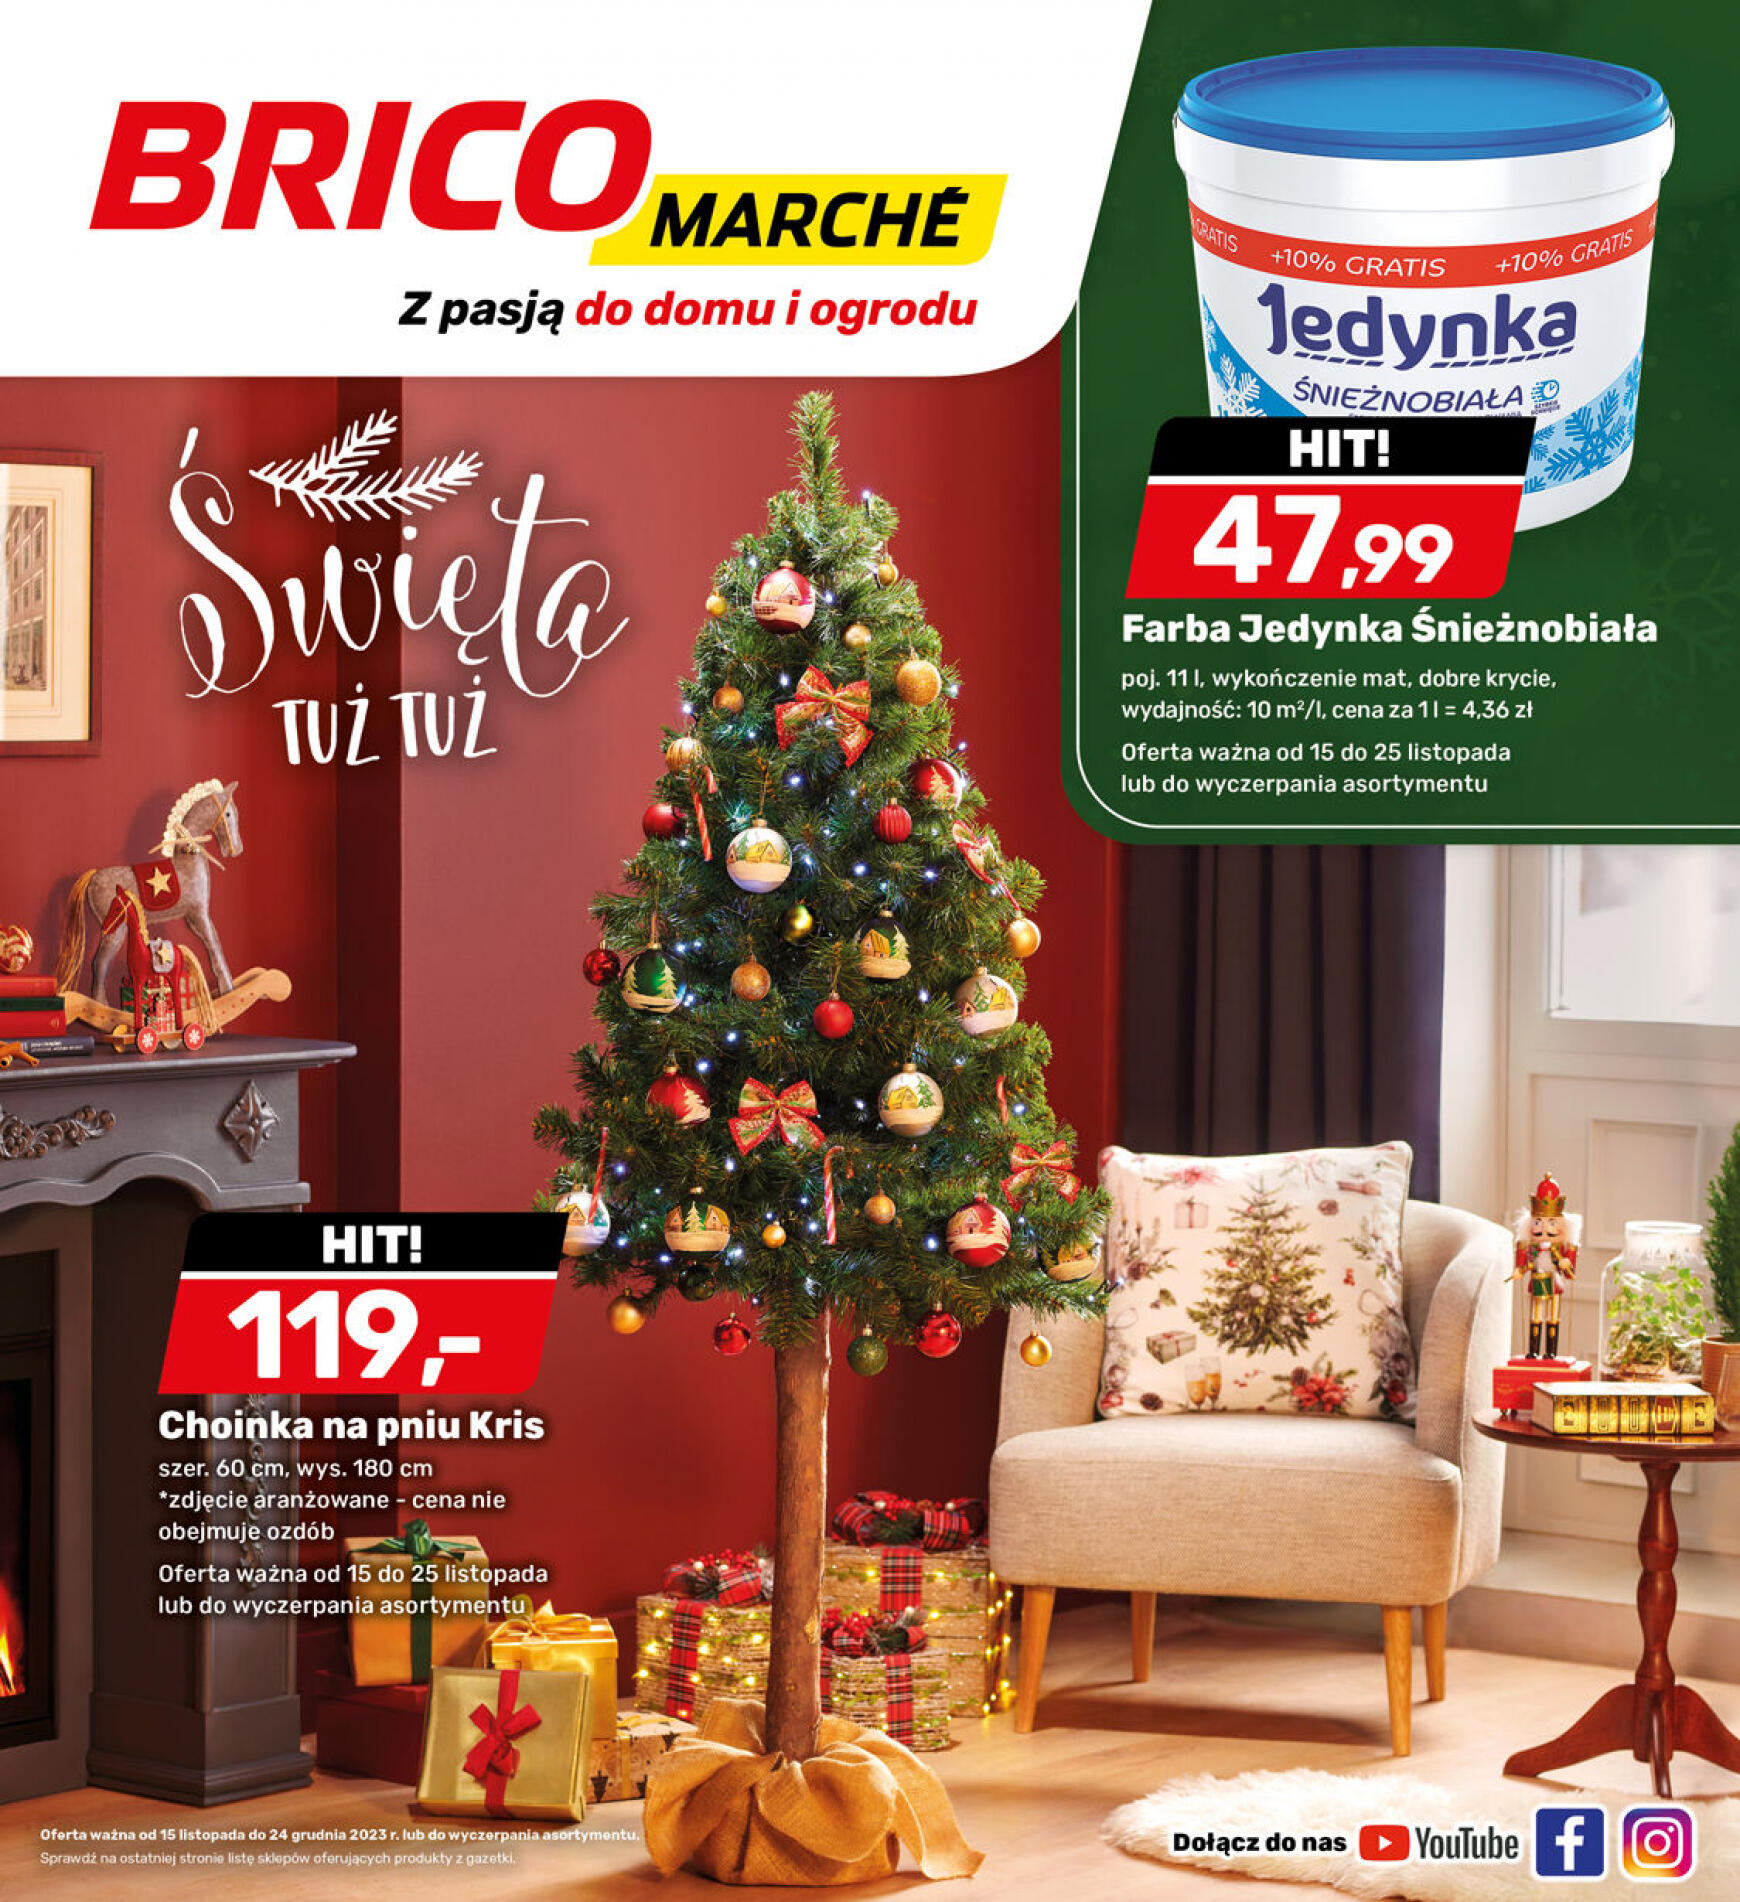 brico-marche - - Bricomarche - page: 21